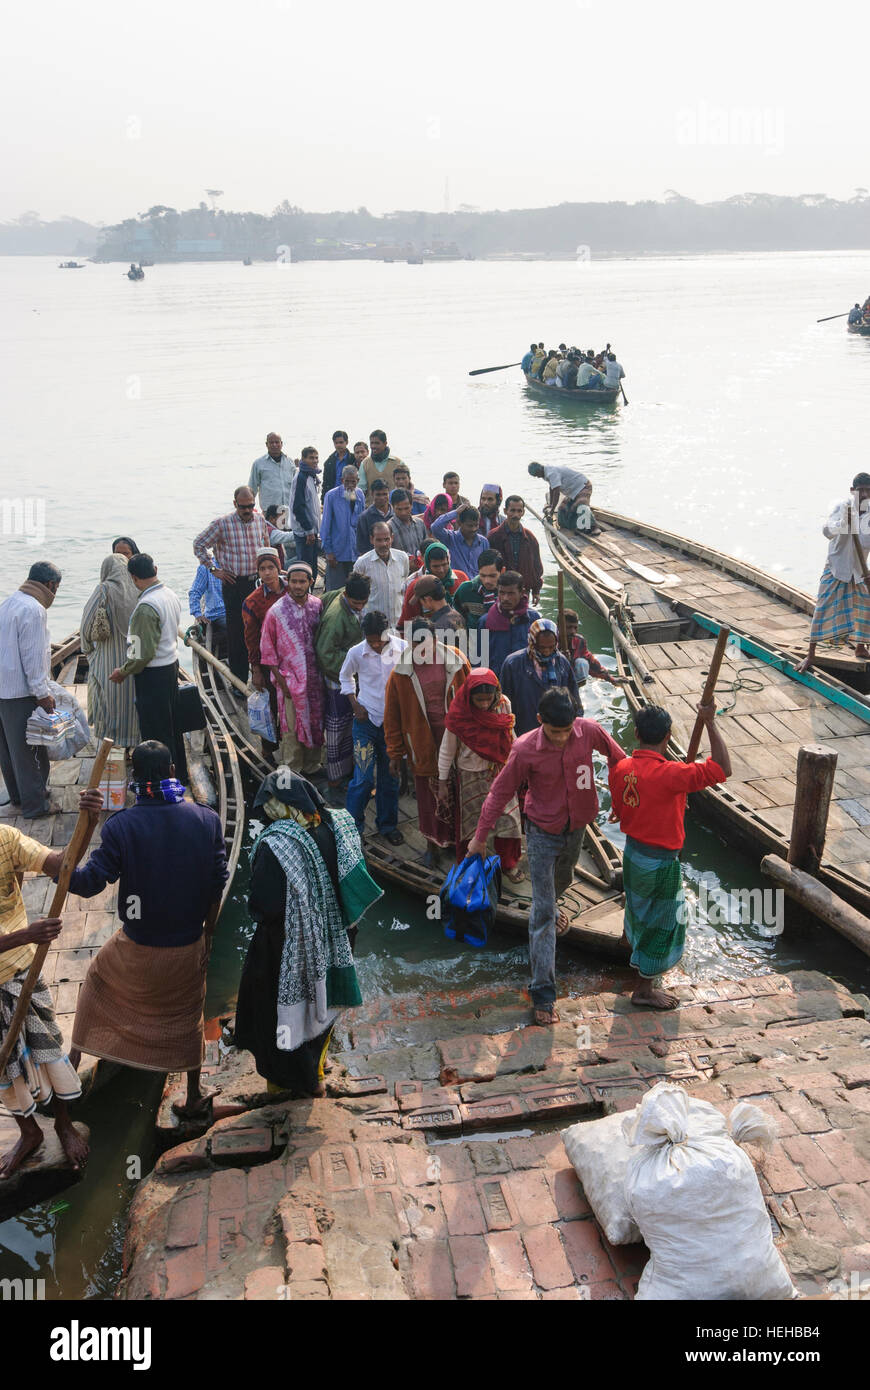 Barisal: Ferry boats, people, Barisal Division, Bangladesh Stock Photo